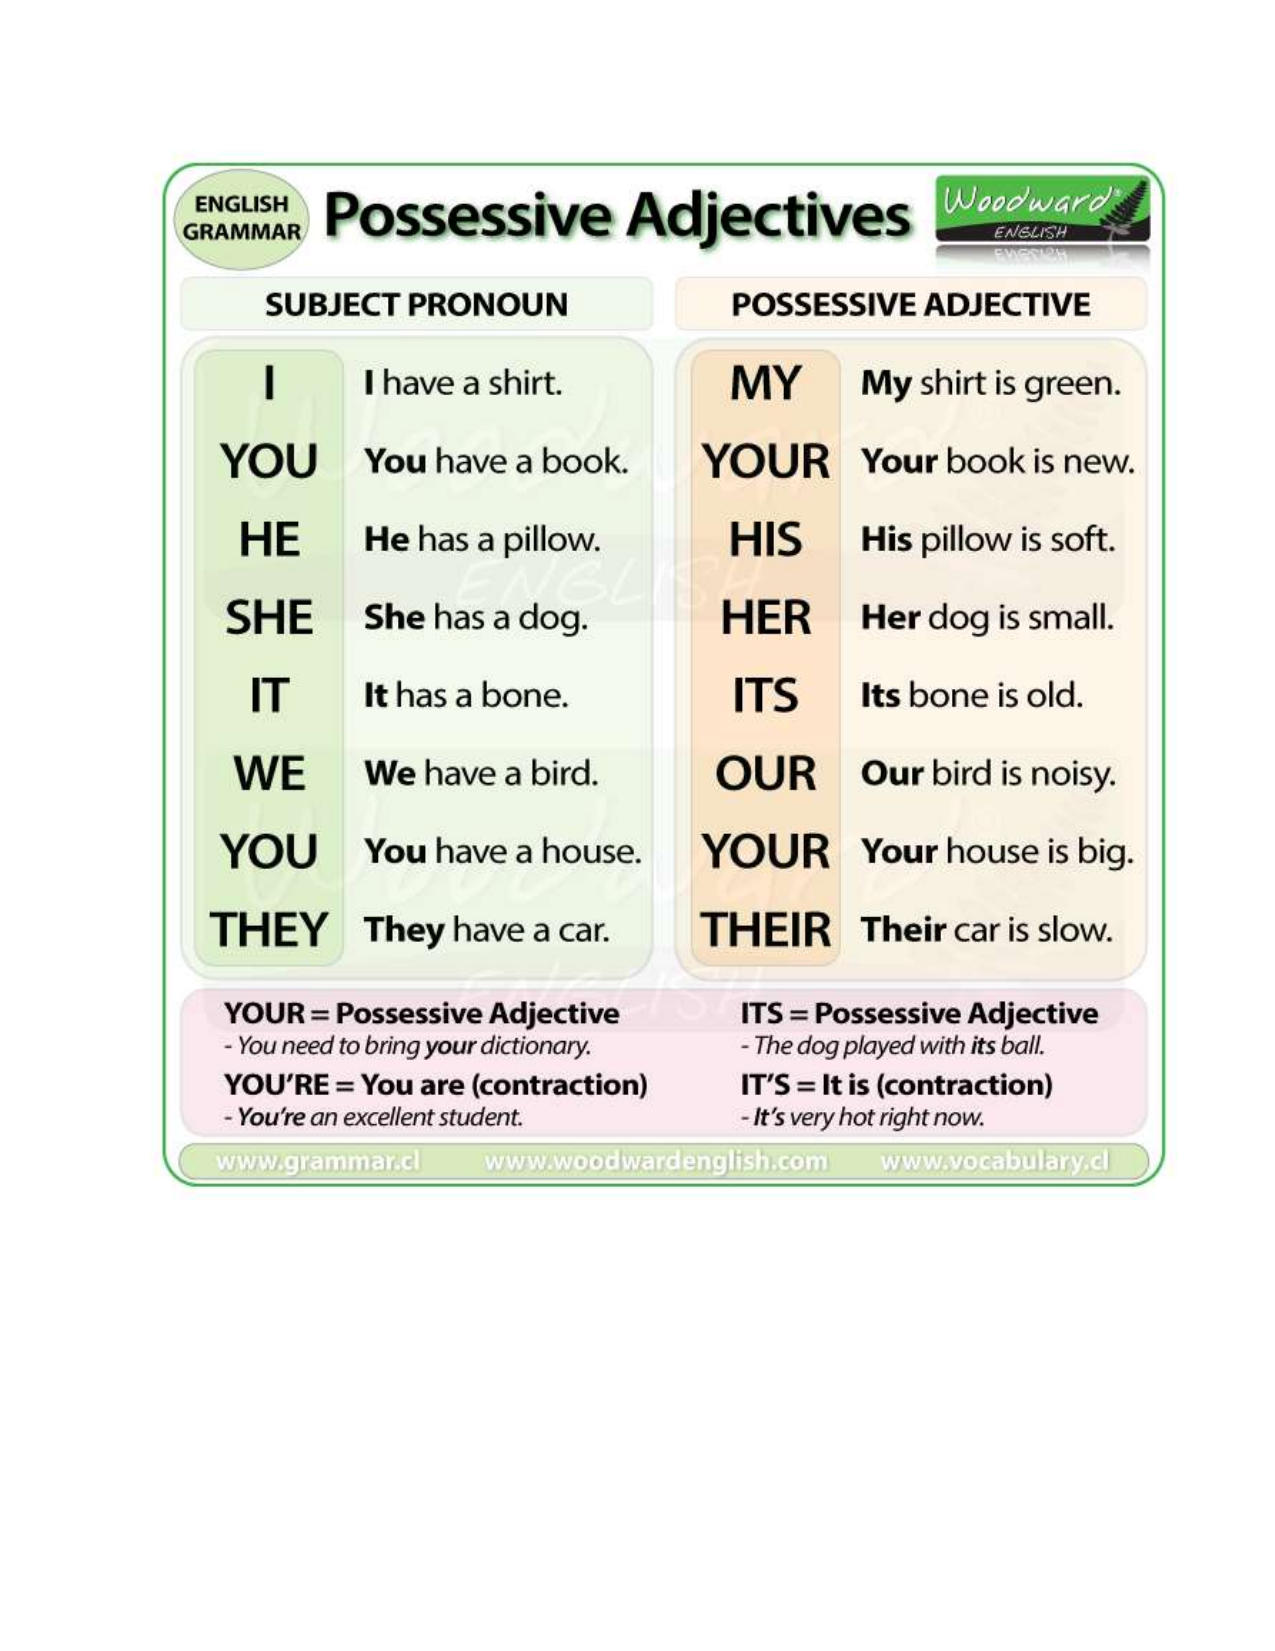 Переведи с английского his. Possessive adjectives. Possessive adjectives в английском. Possessive adjectives предложения. Possessive adjectives перевод.